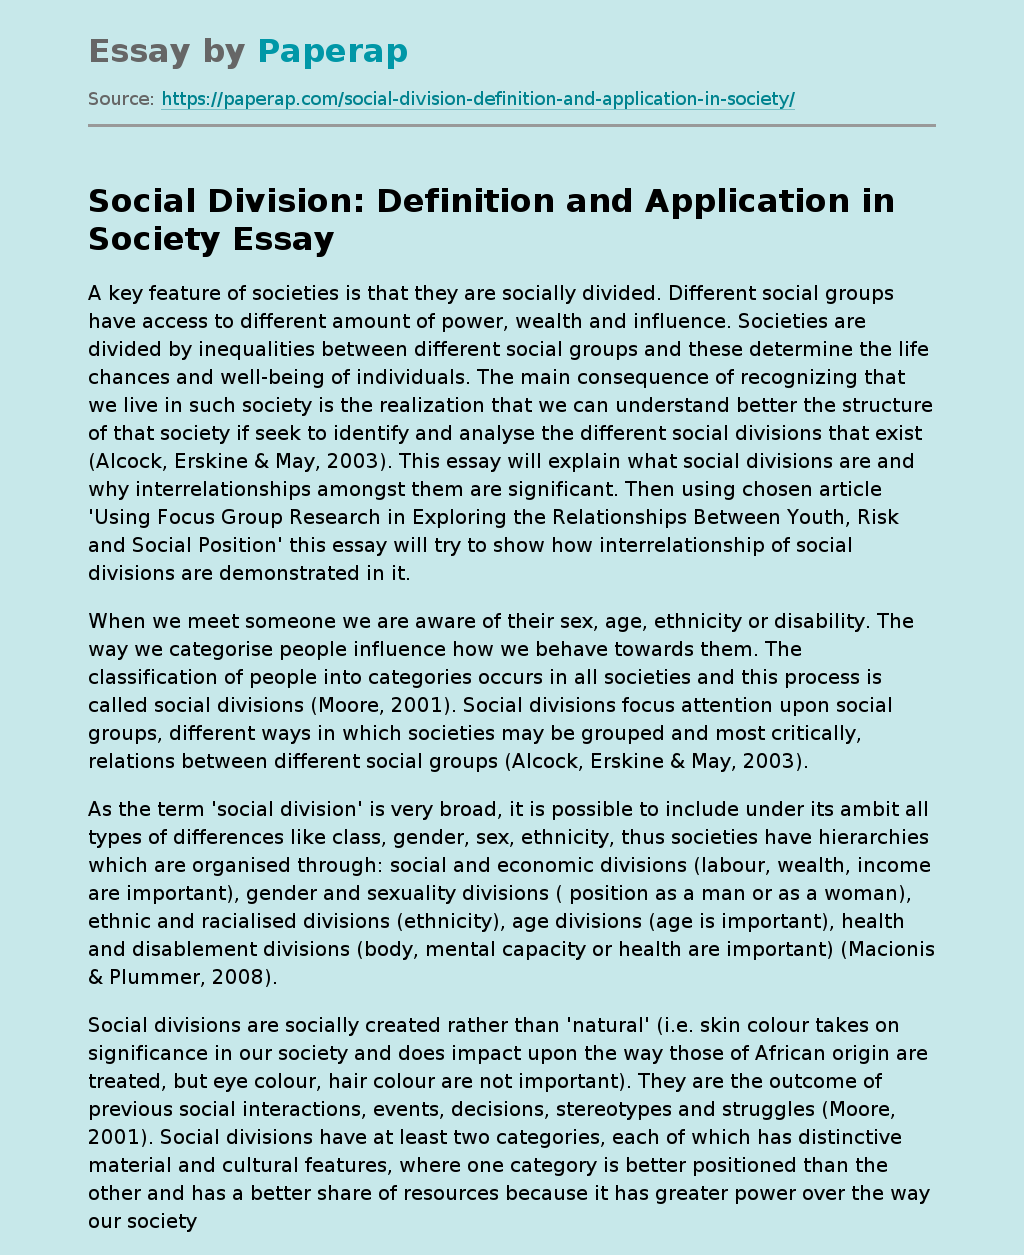 social divisions in society